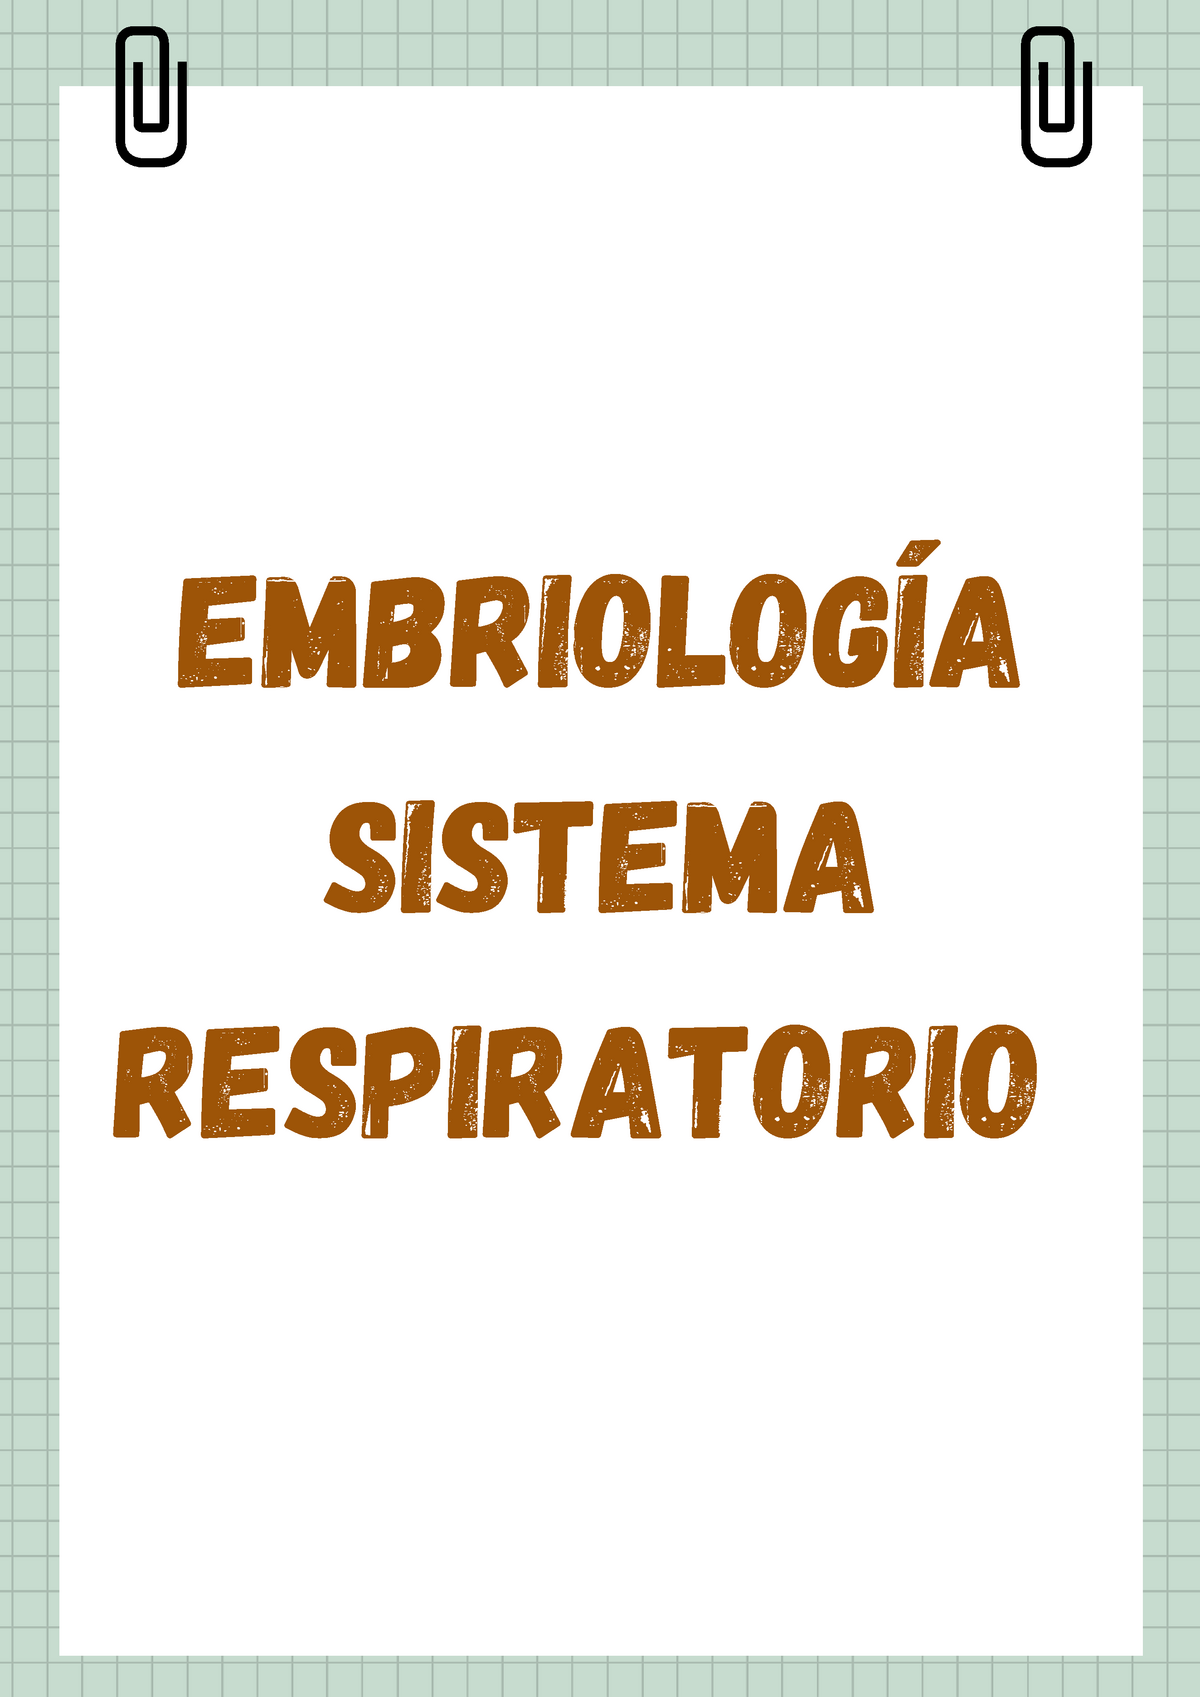 Embriolog A Del Sistema Respiratorio Embriolog A Sistema Respiratorio Tabique Traqueoesof Gico